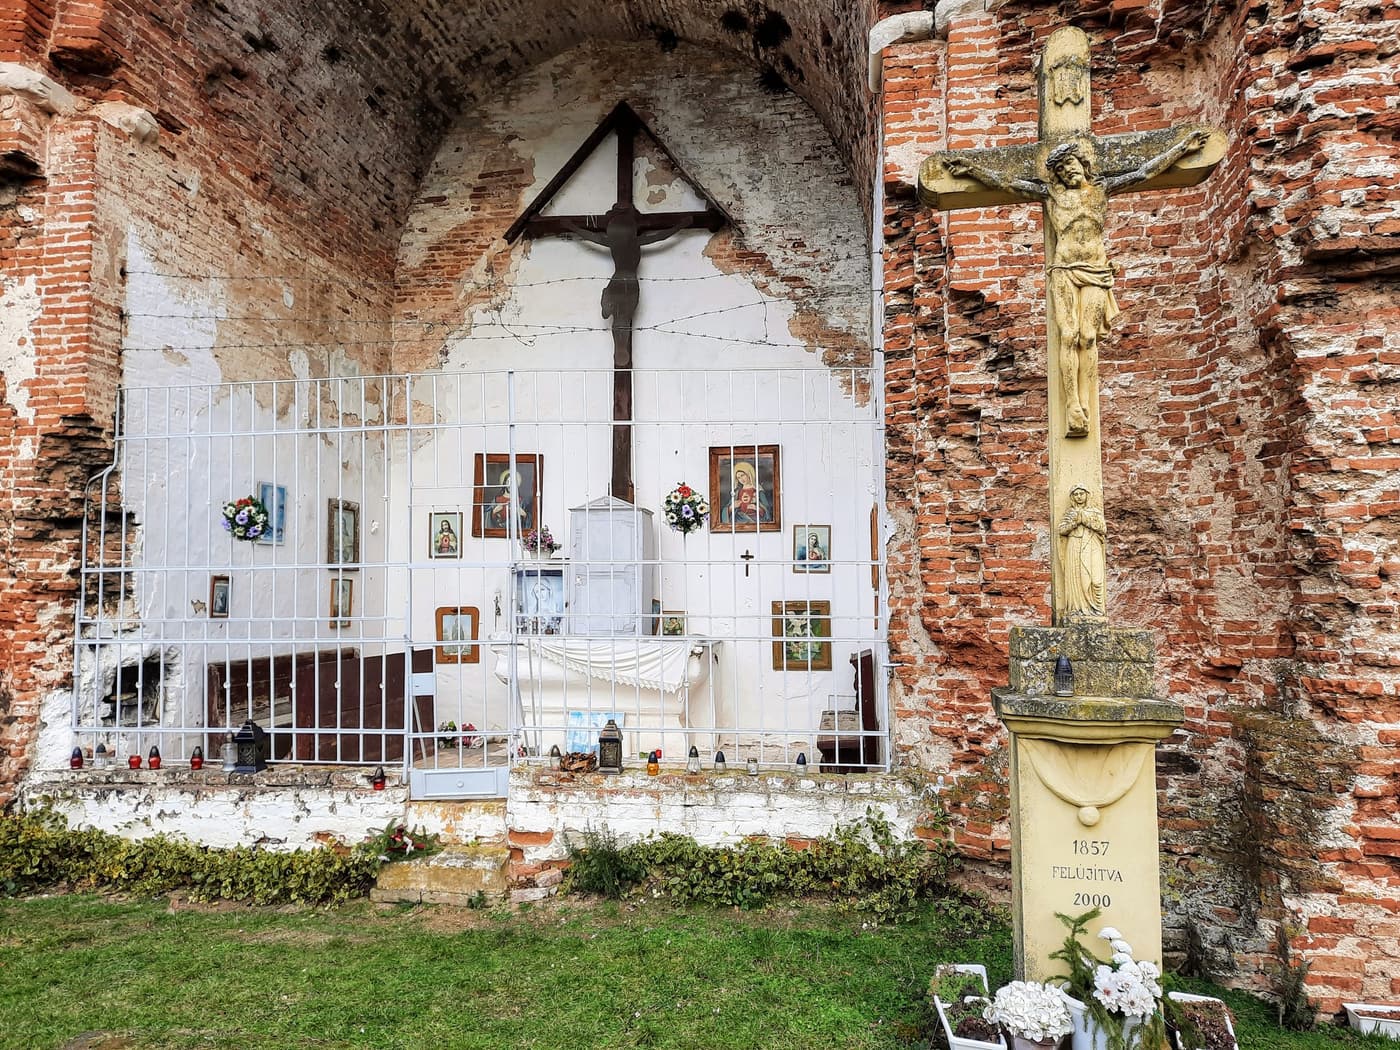 Kirchenruine Máriaszéplak – Ein Denkmal des Glaubens und der Geschichte